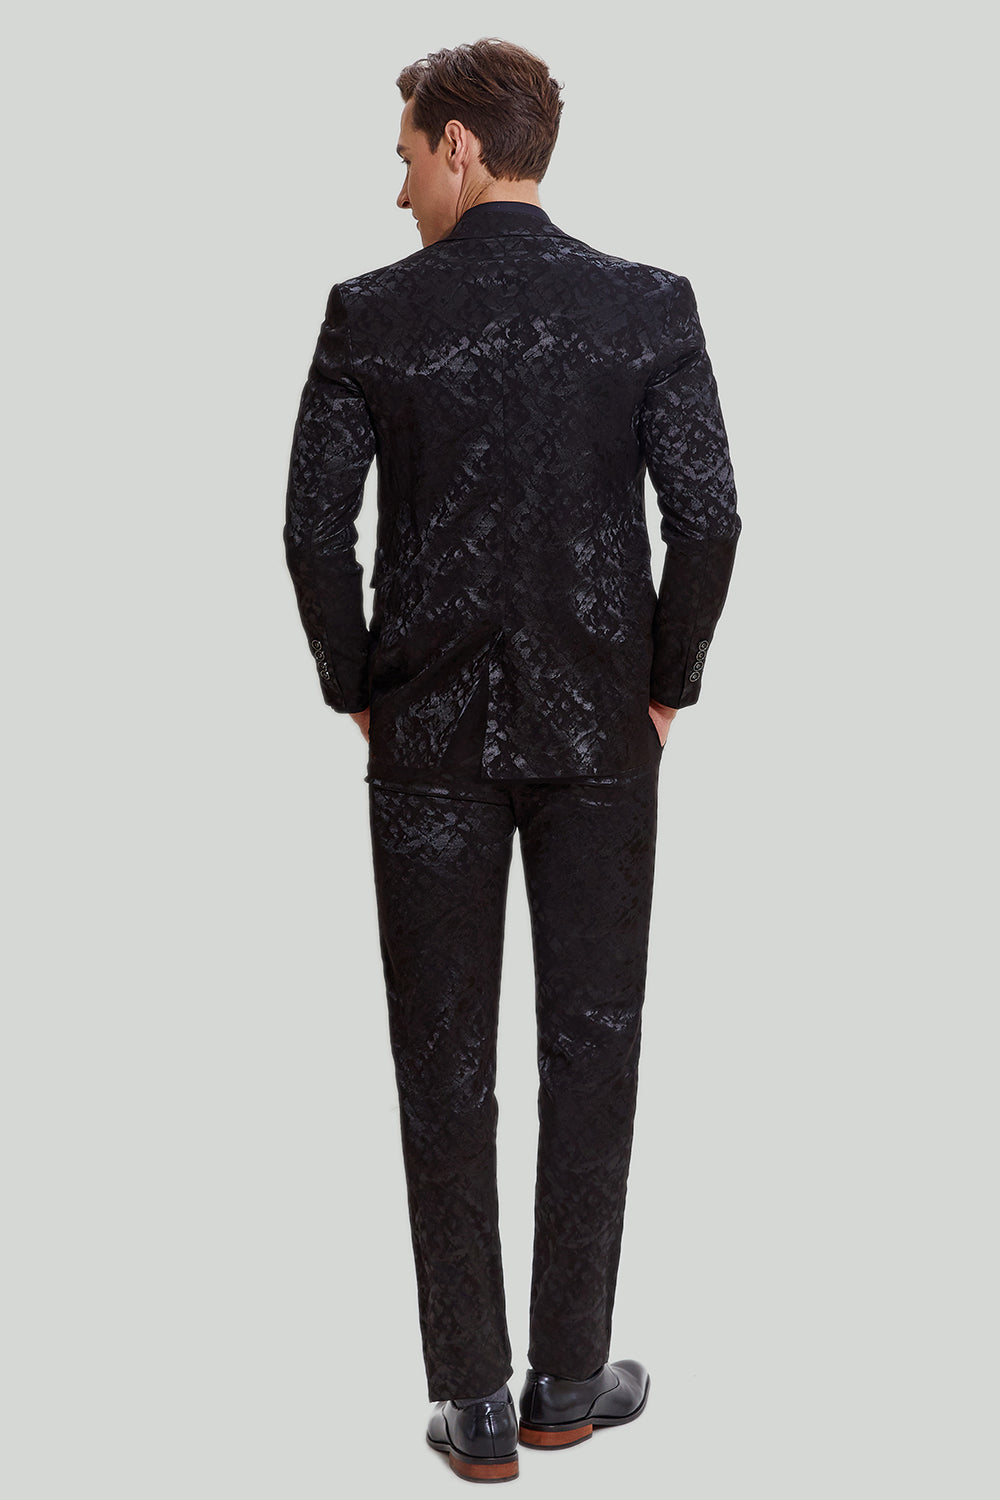 Men's Black 3-piece Jacquard Jacket Vest Pants Suit